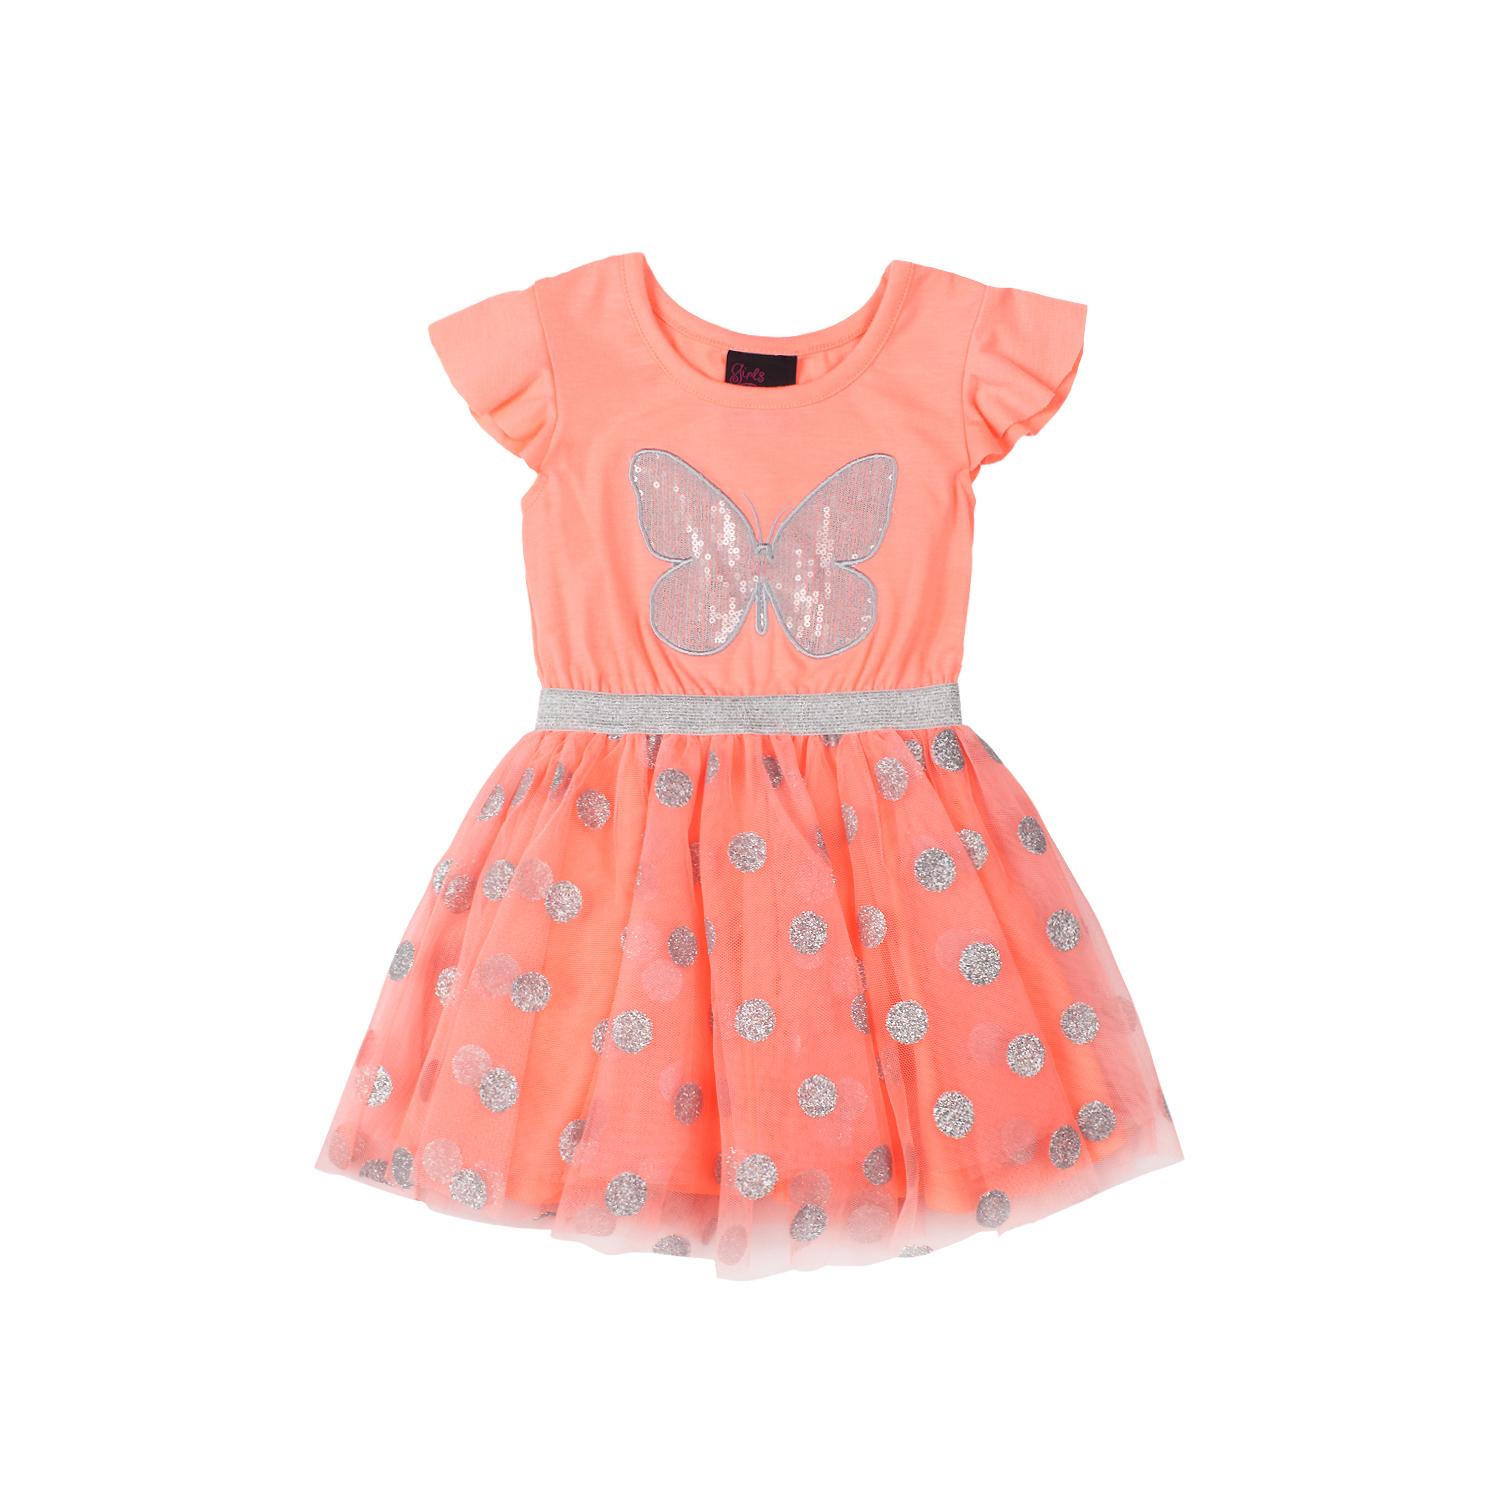 Girls Rule Infant & Toddler Girl's Embellished Dress - Heart